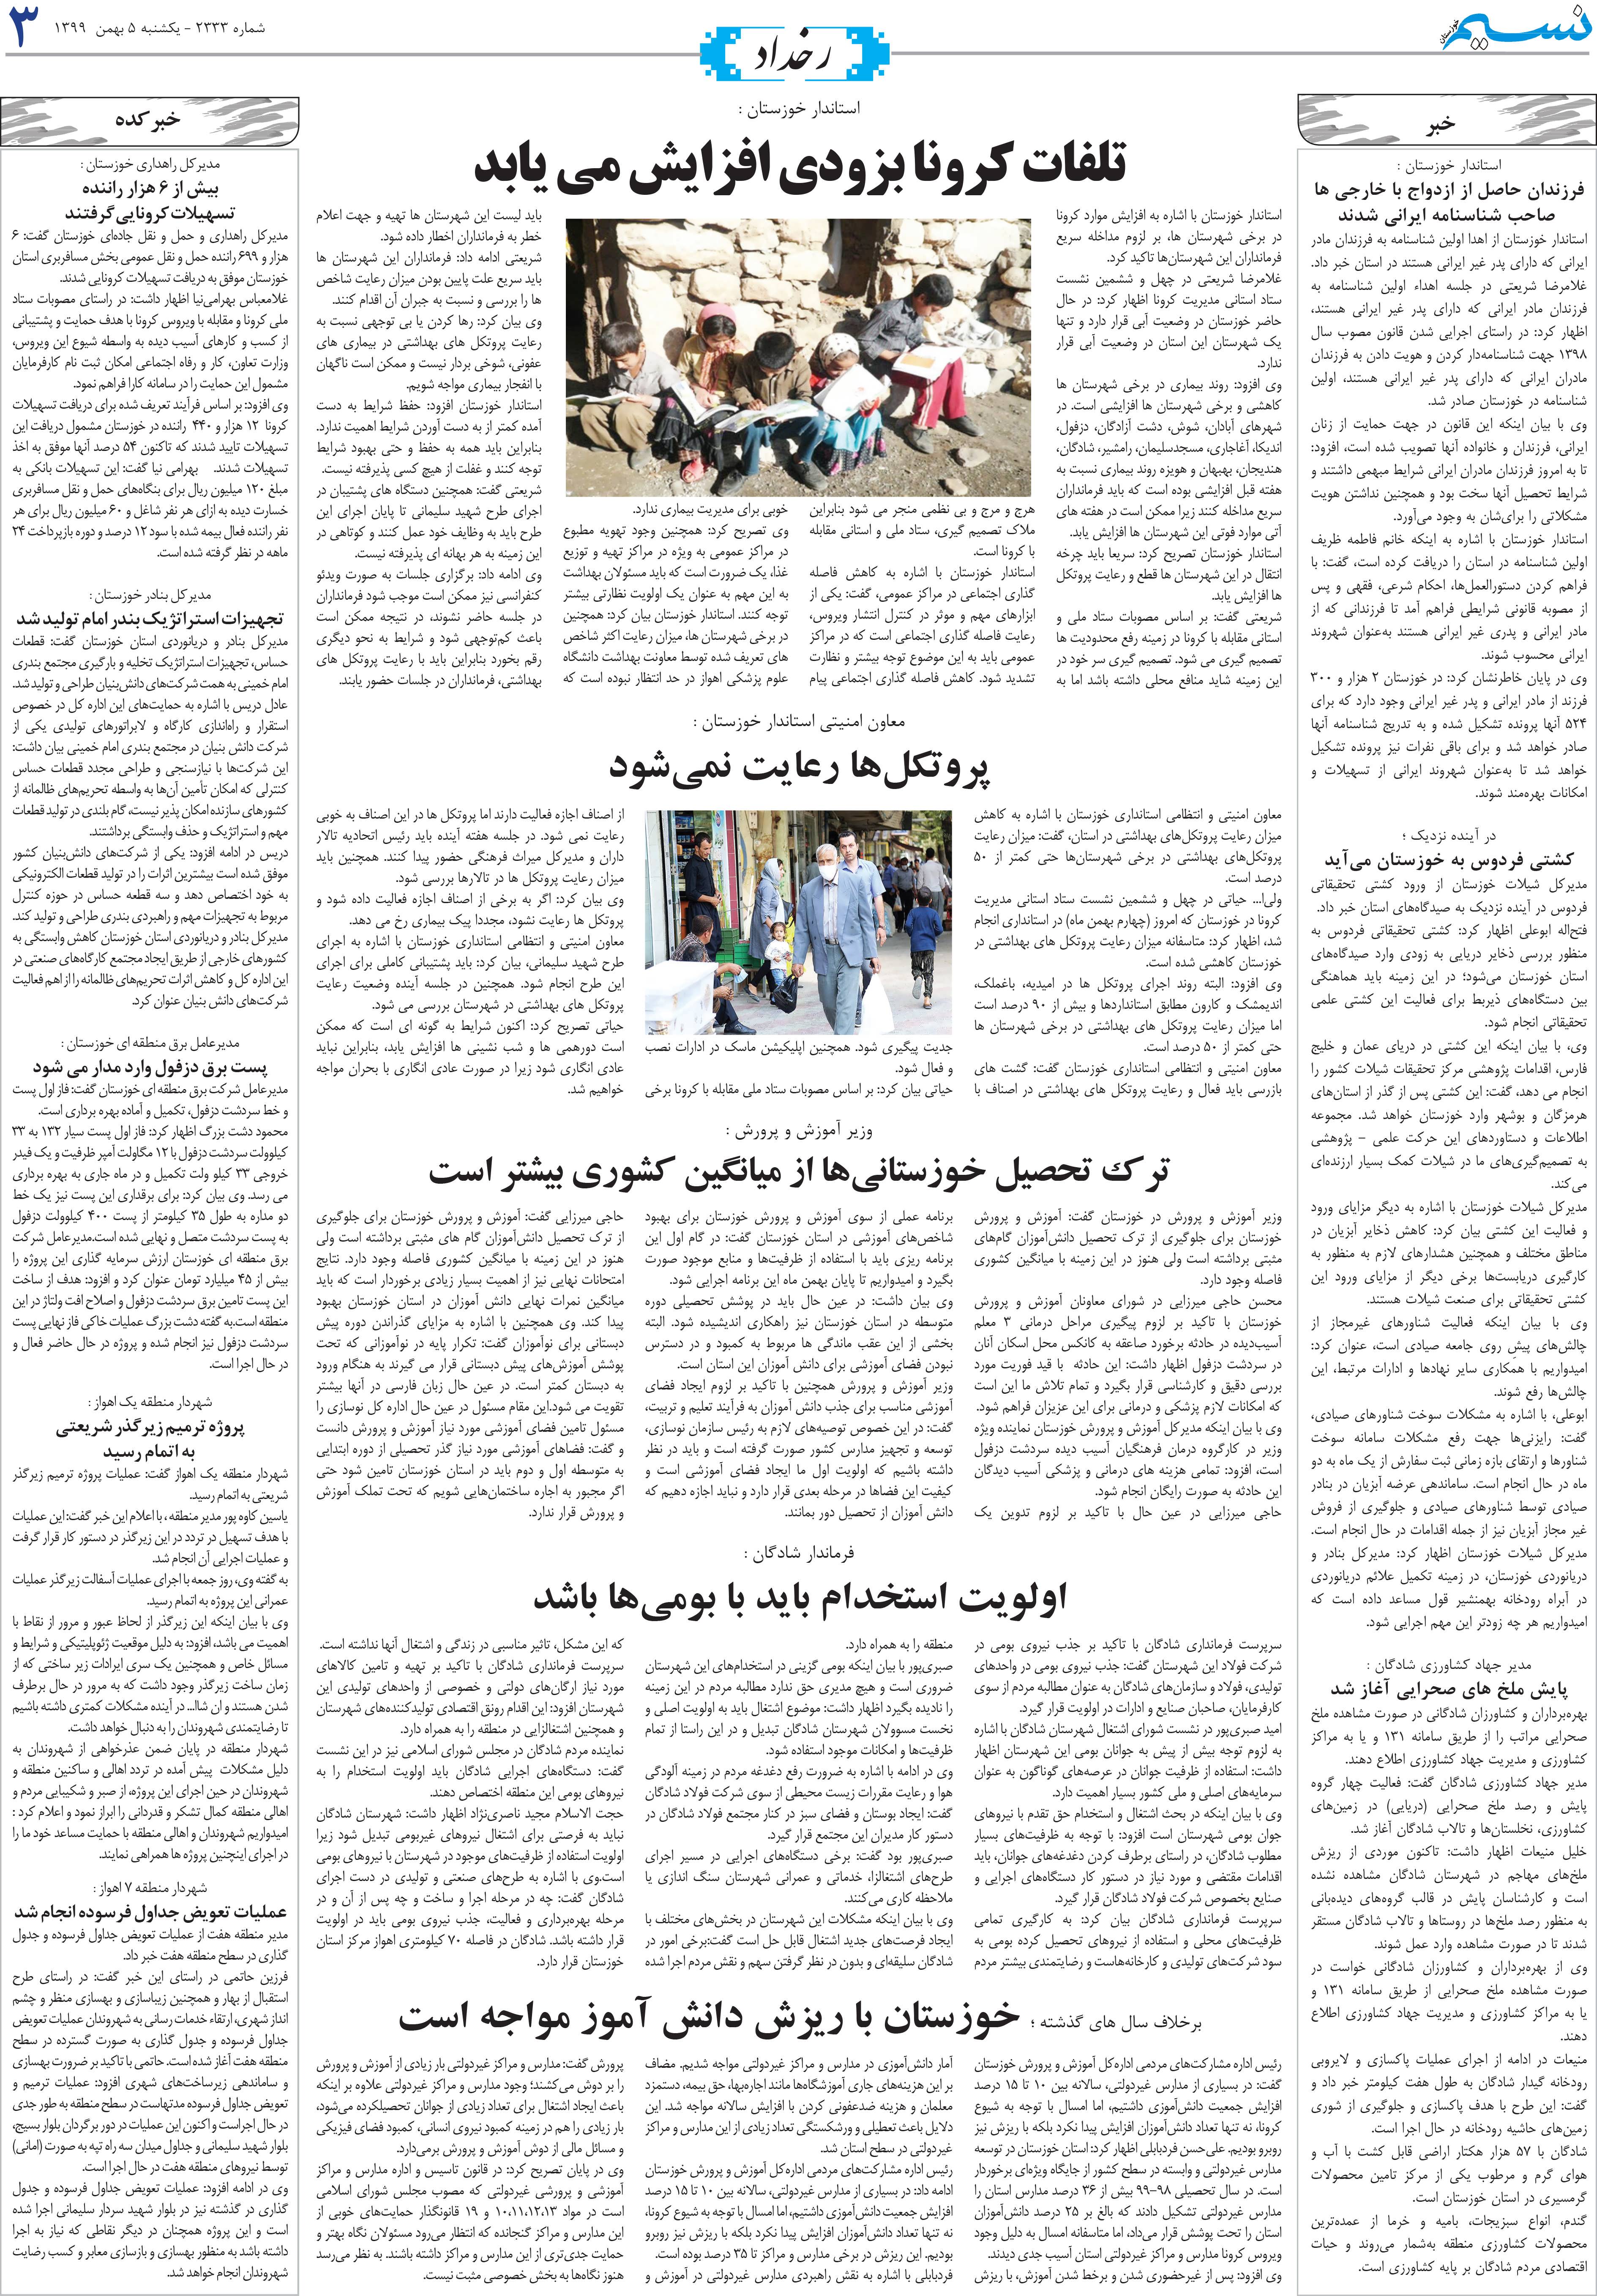 صفحه رخداد روزنامه نسیم شماره 2333